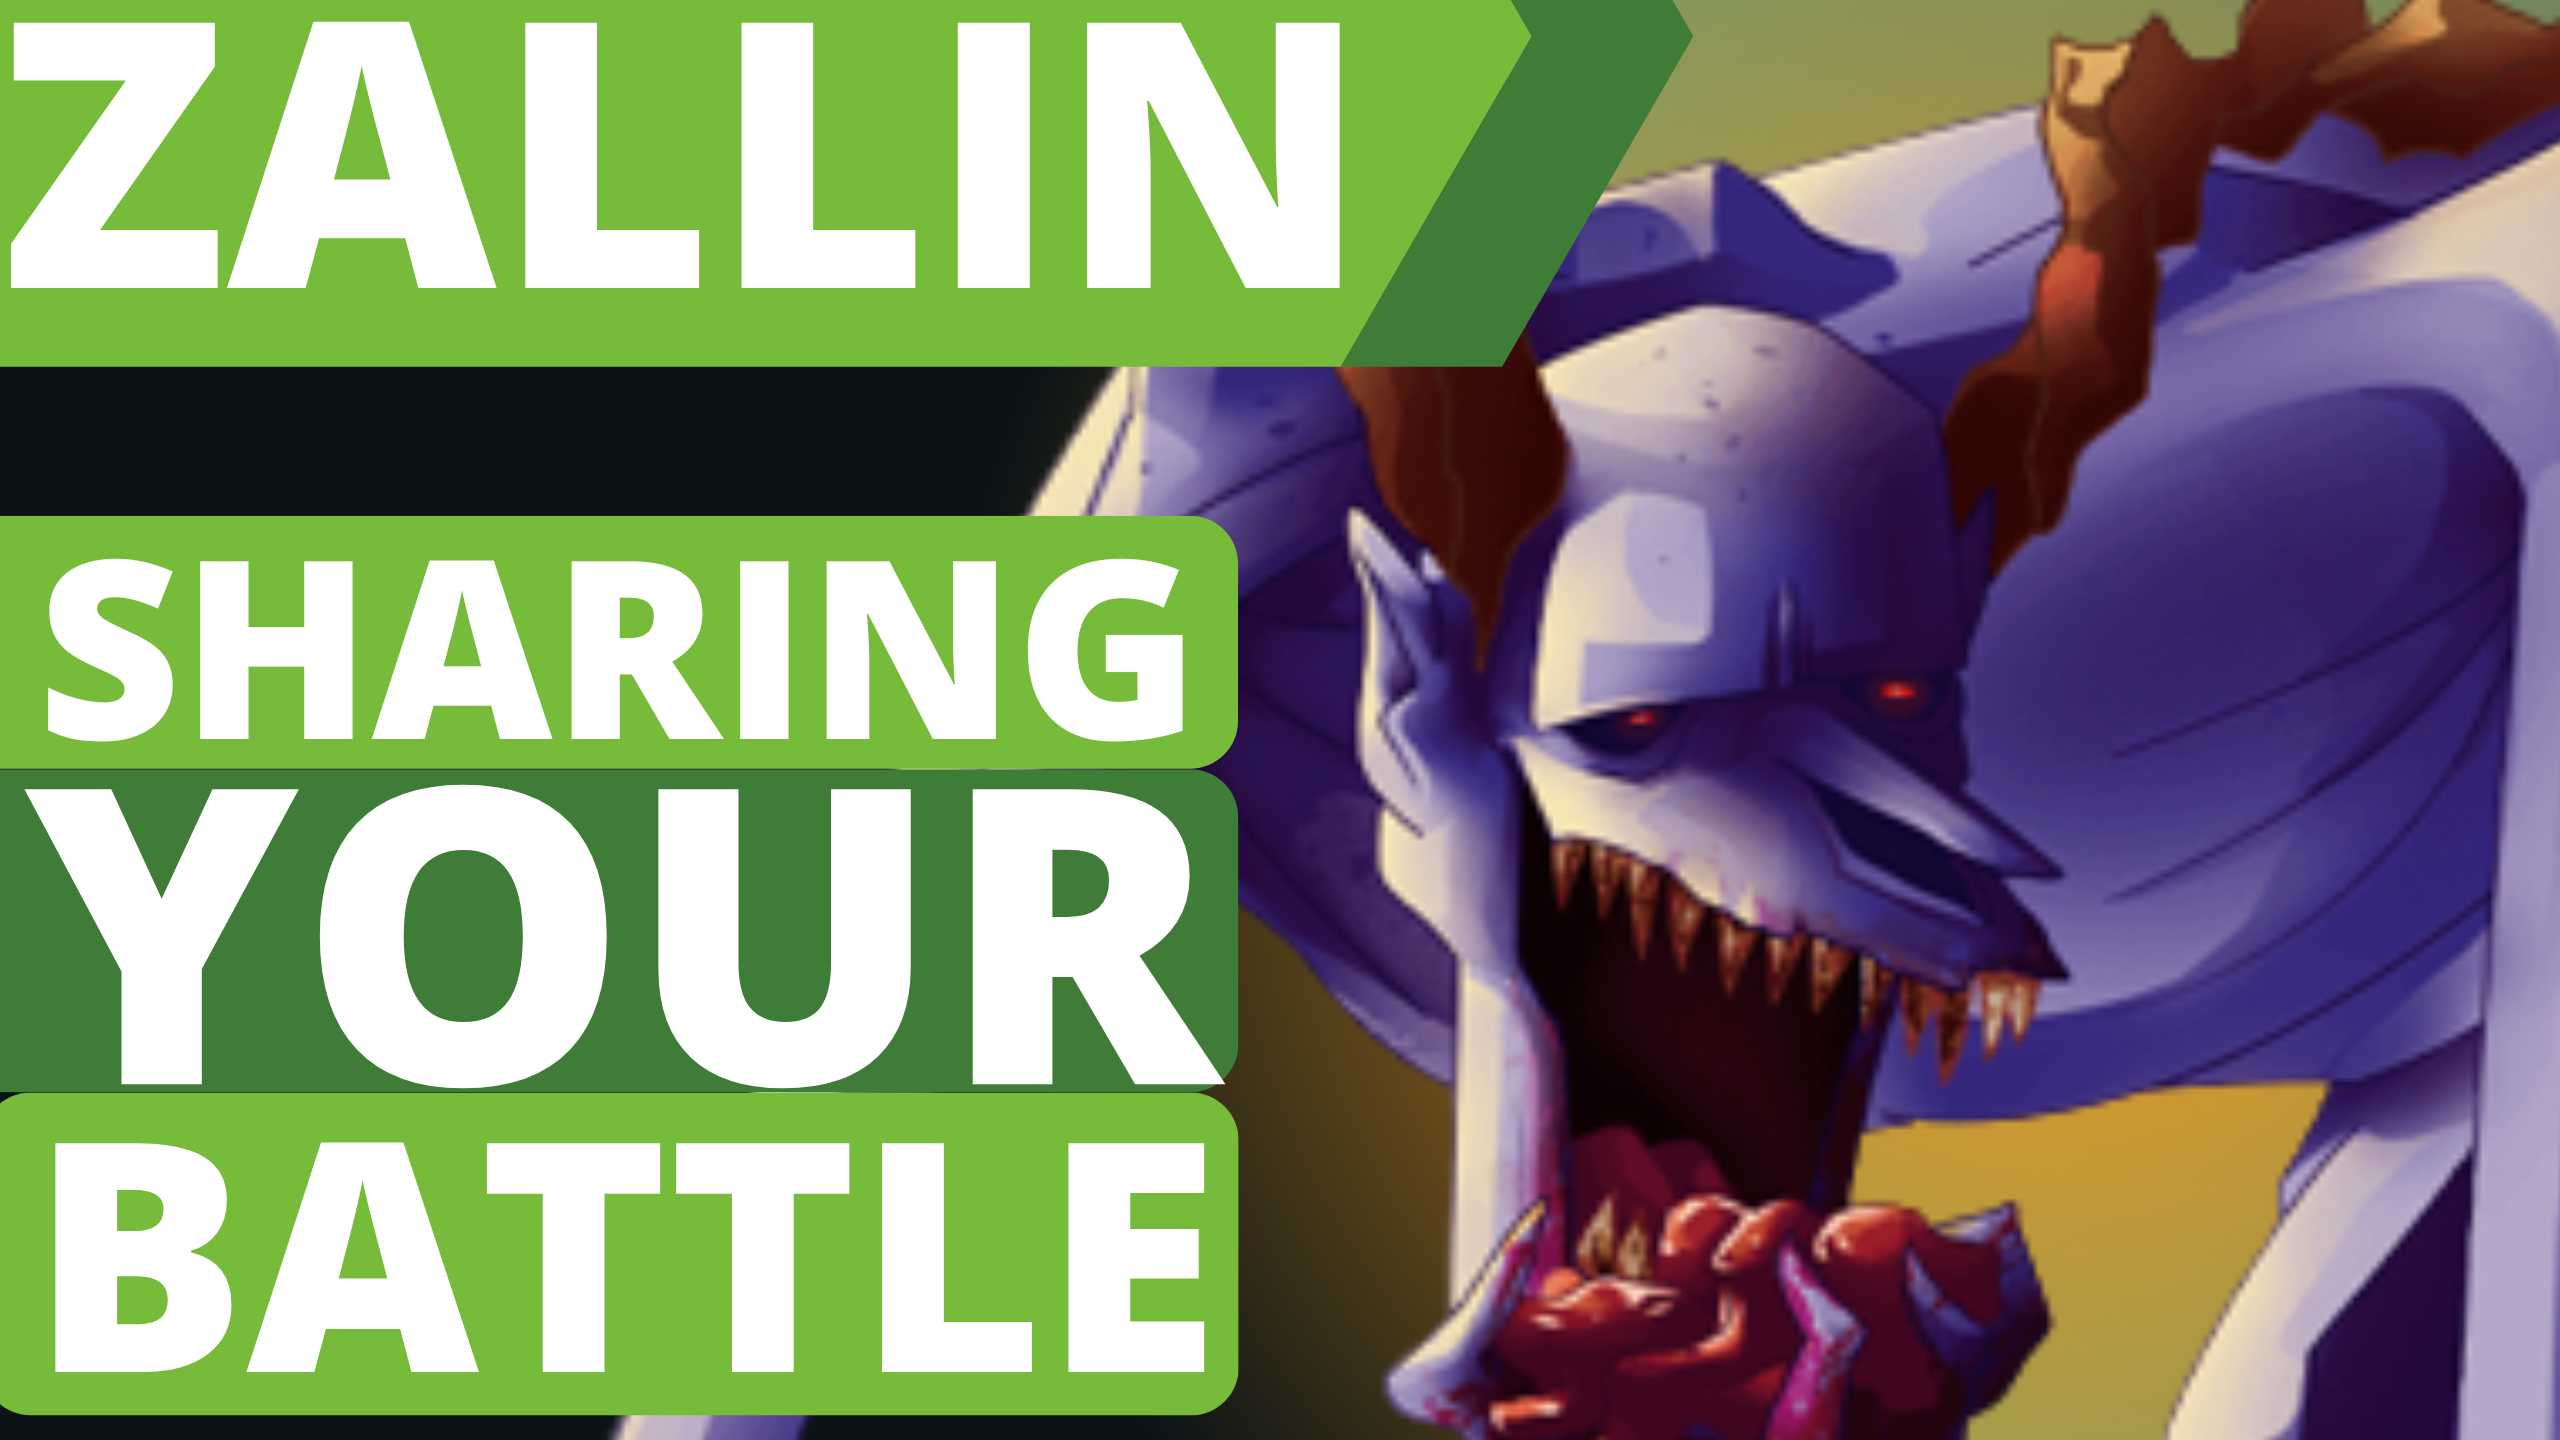 @zallin/zallin-share-your-battle-cursed-windeku